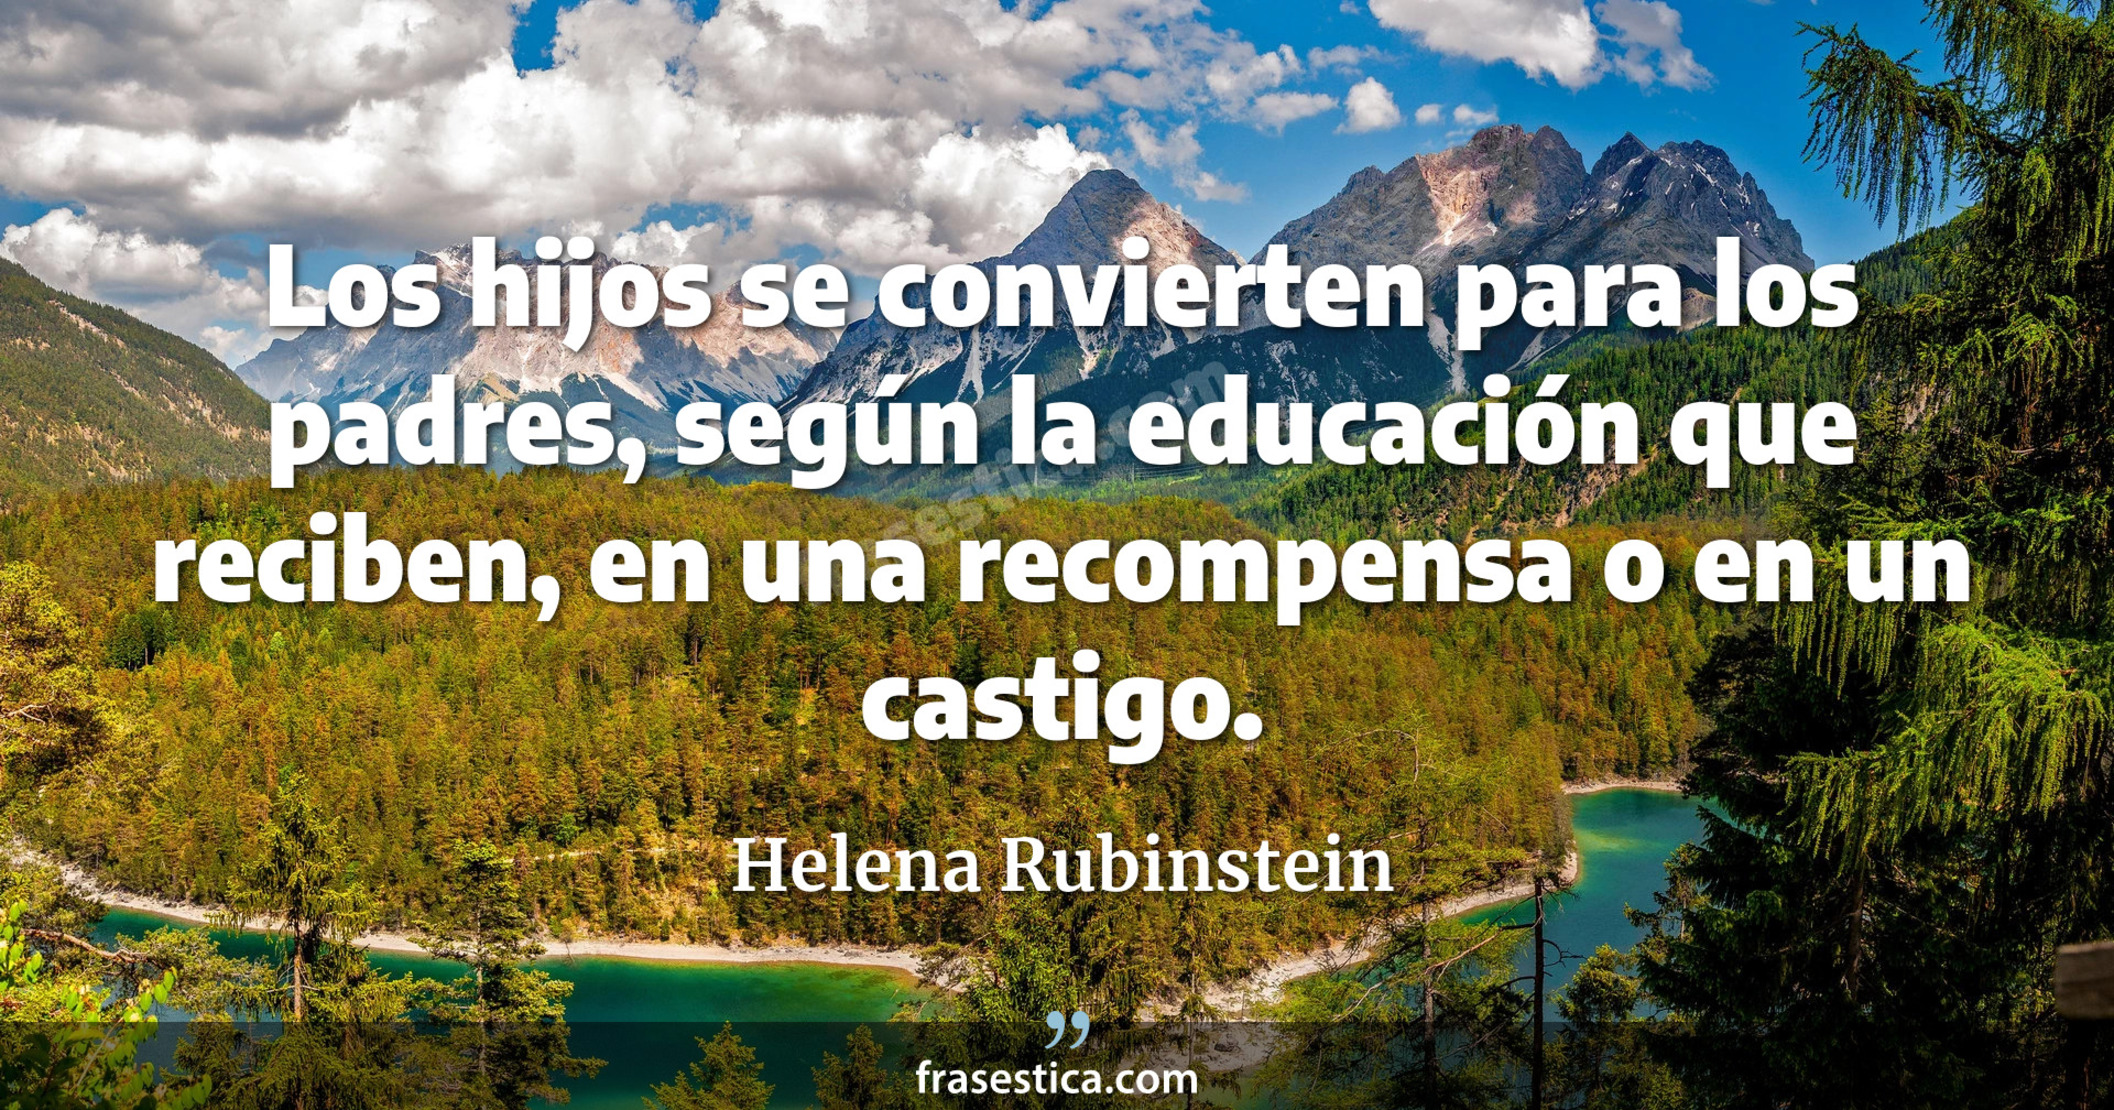 Los hijos se convierten para los padres, según la educación que reciben, en una recompensa o en un castigo. - Helena Rubinstein